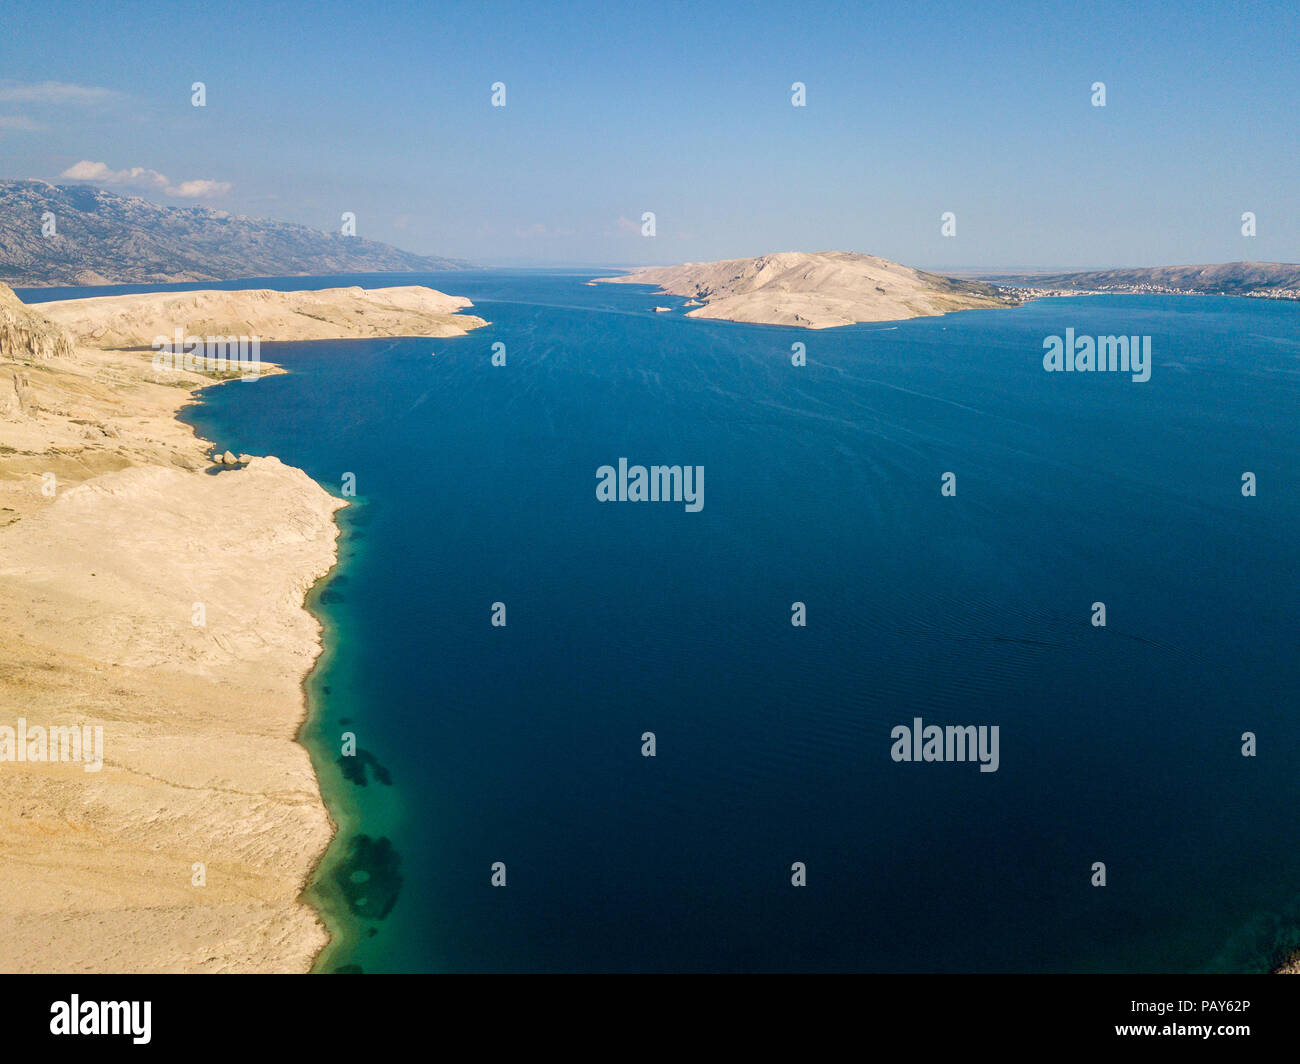 Luftaufnahme von einem unbewohnten Gebiet, wilde Natur. Küste von Kroatien. Insel Pag und Berge am Horizont Stockfoto